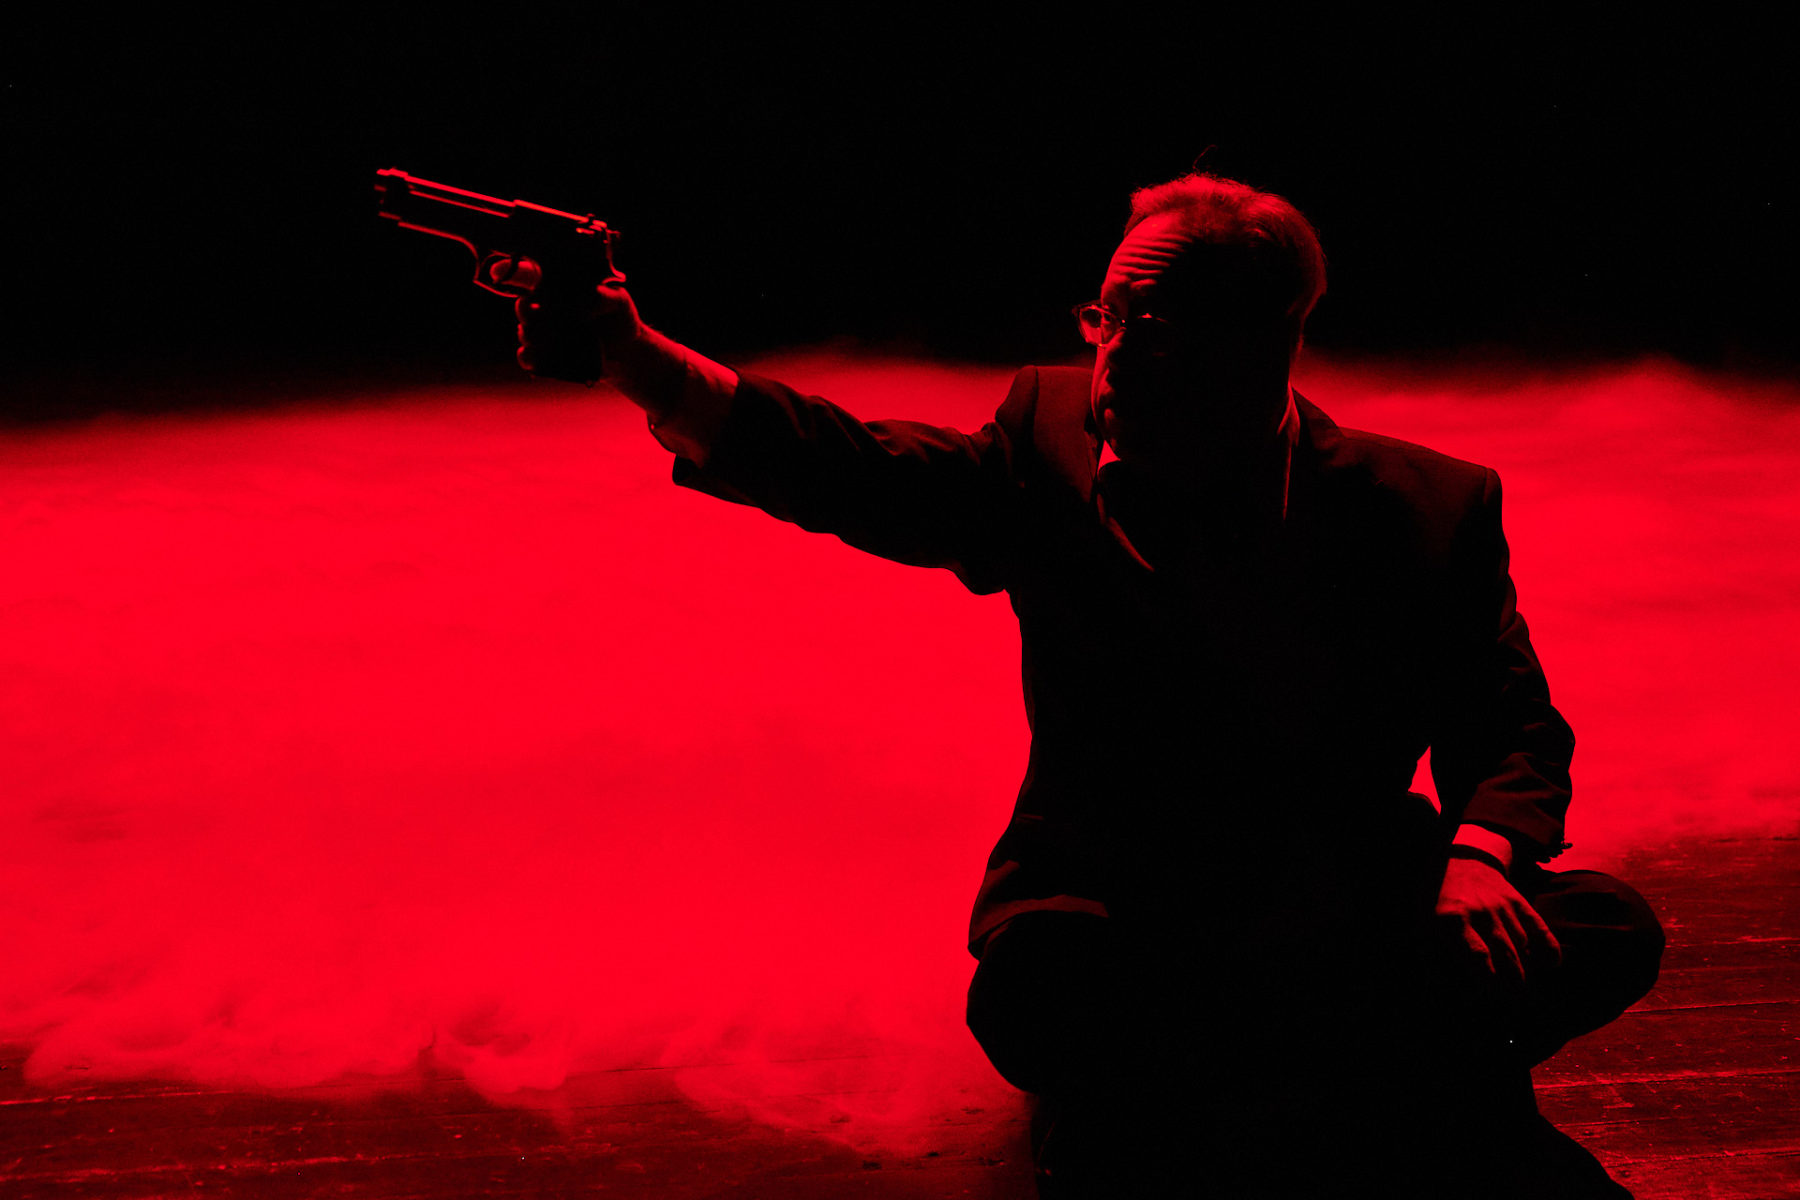 Christoph von Goumoëns im James Bond-Look. Nebel auf dem Boden. Alles rot beleuchtet.